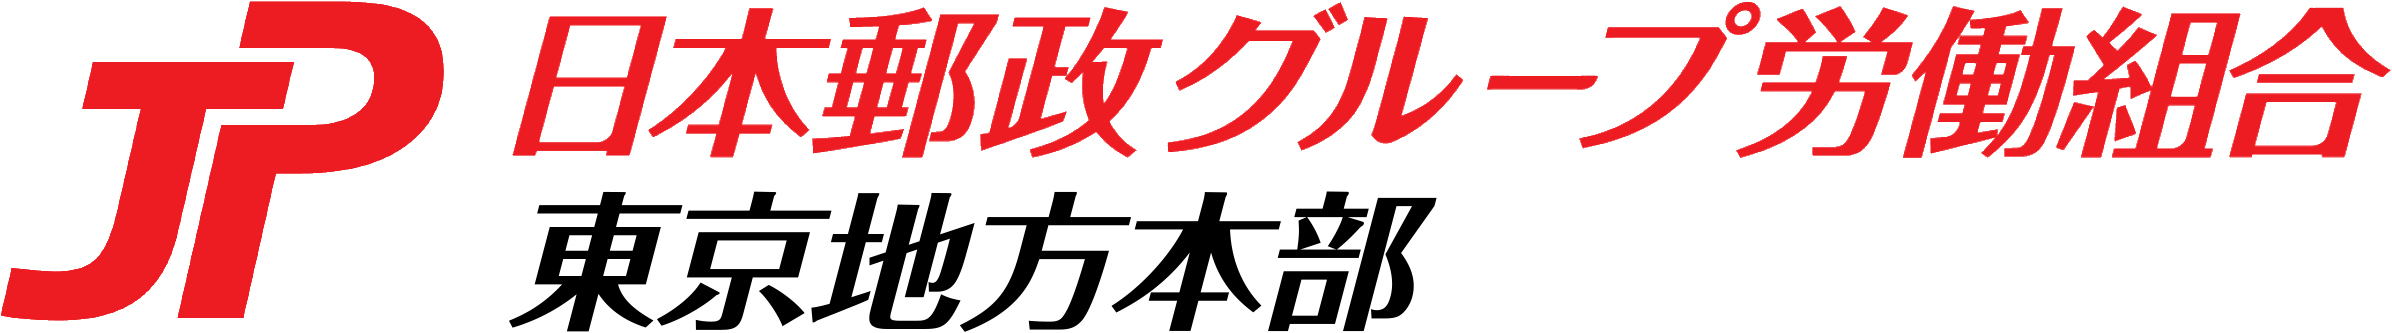 JP労組 東京地方本部 - 日本郵政グループ労働組合